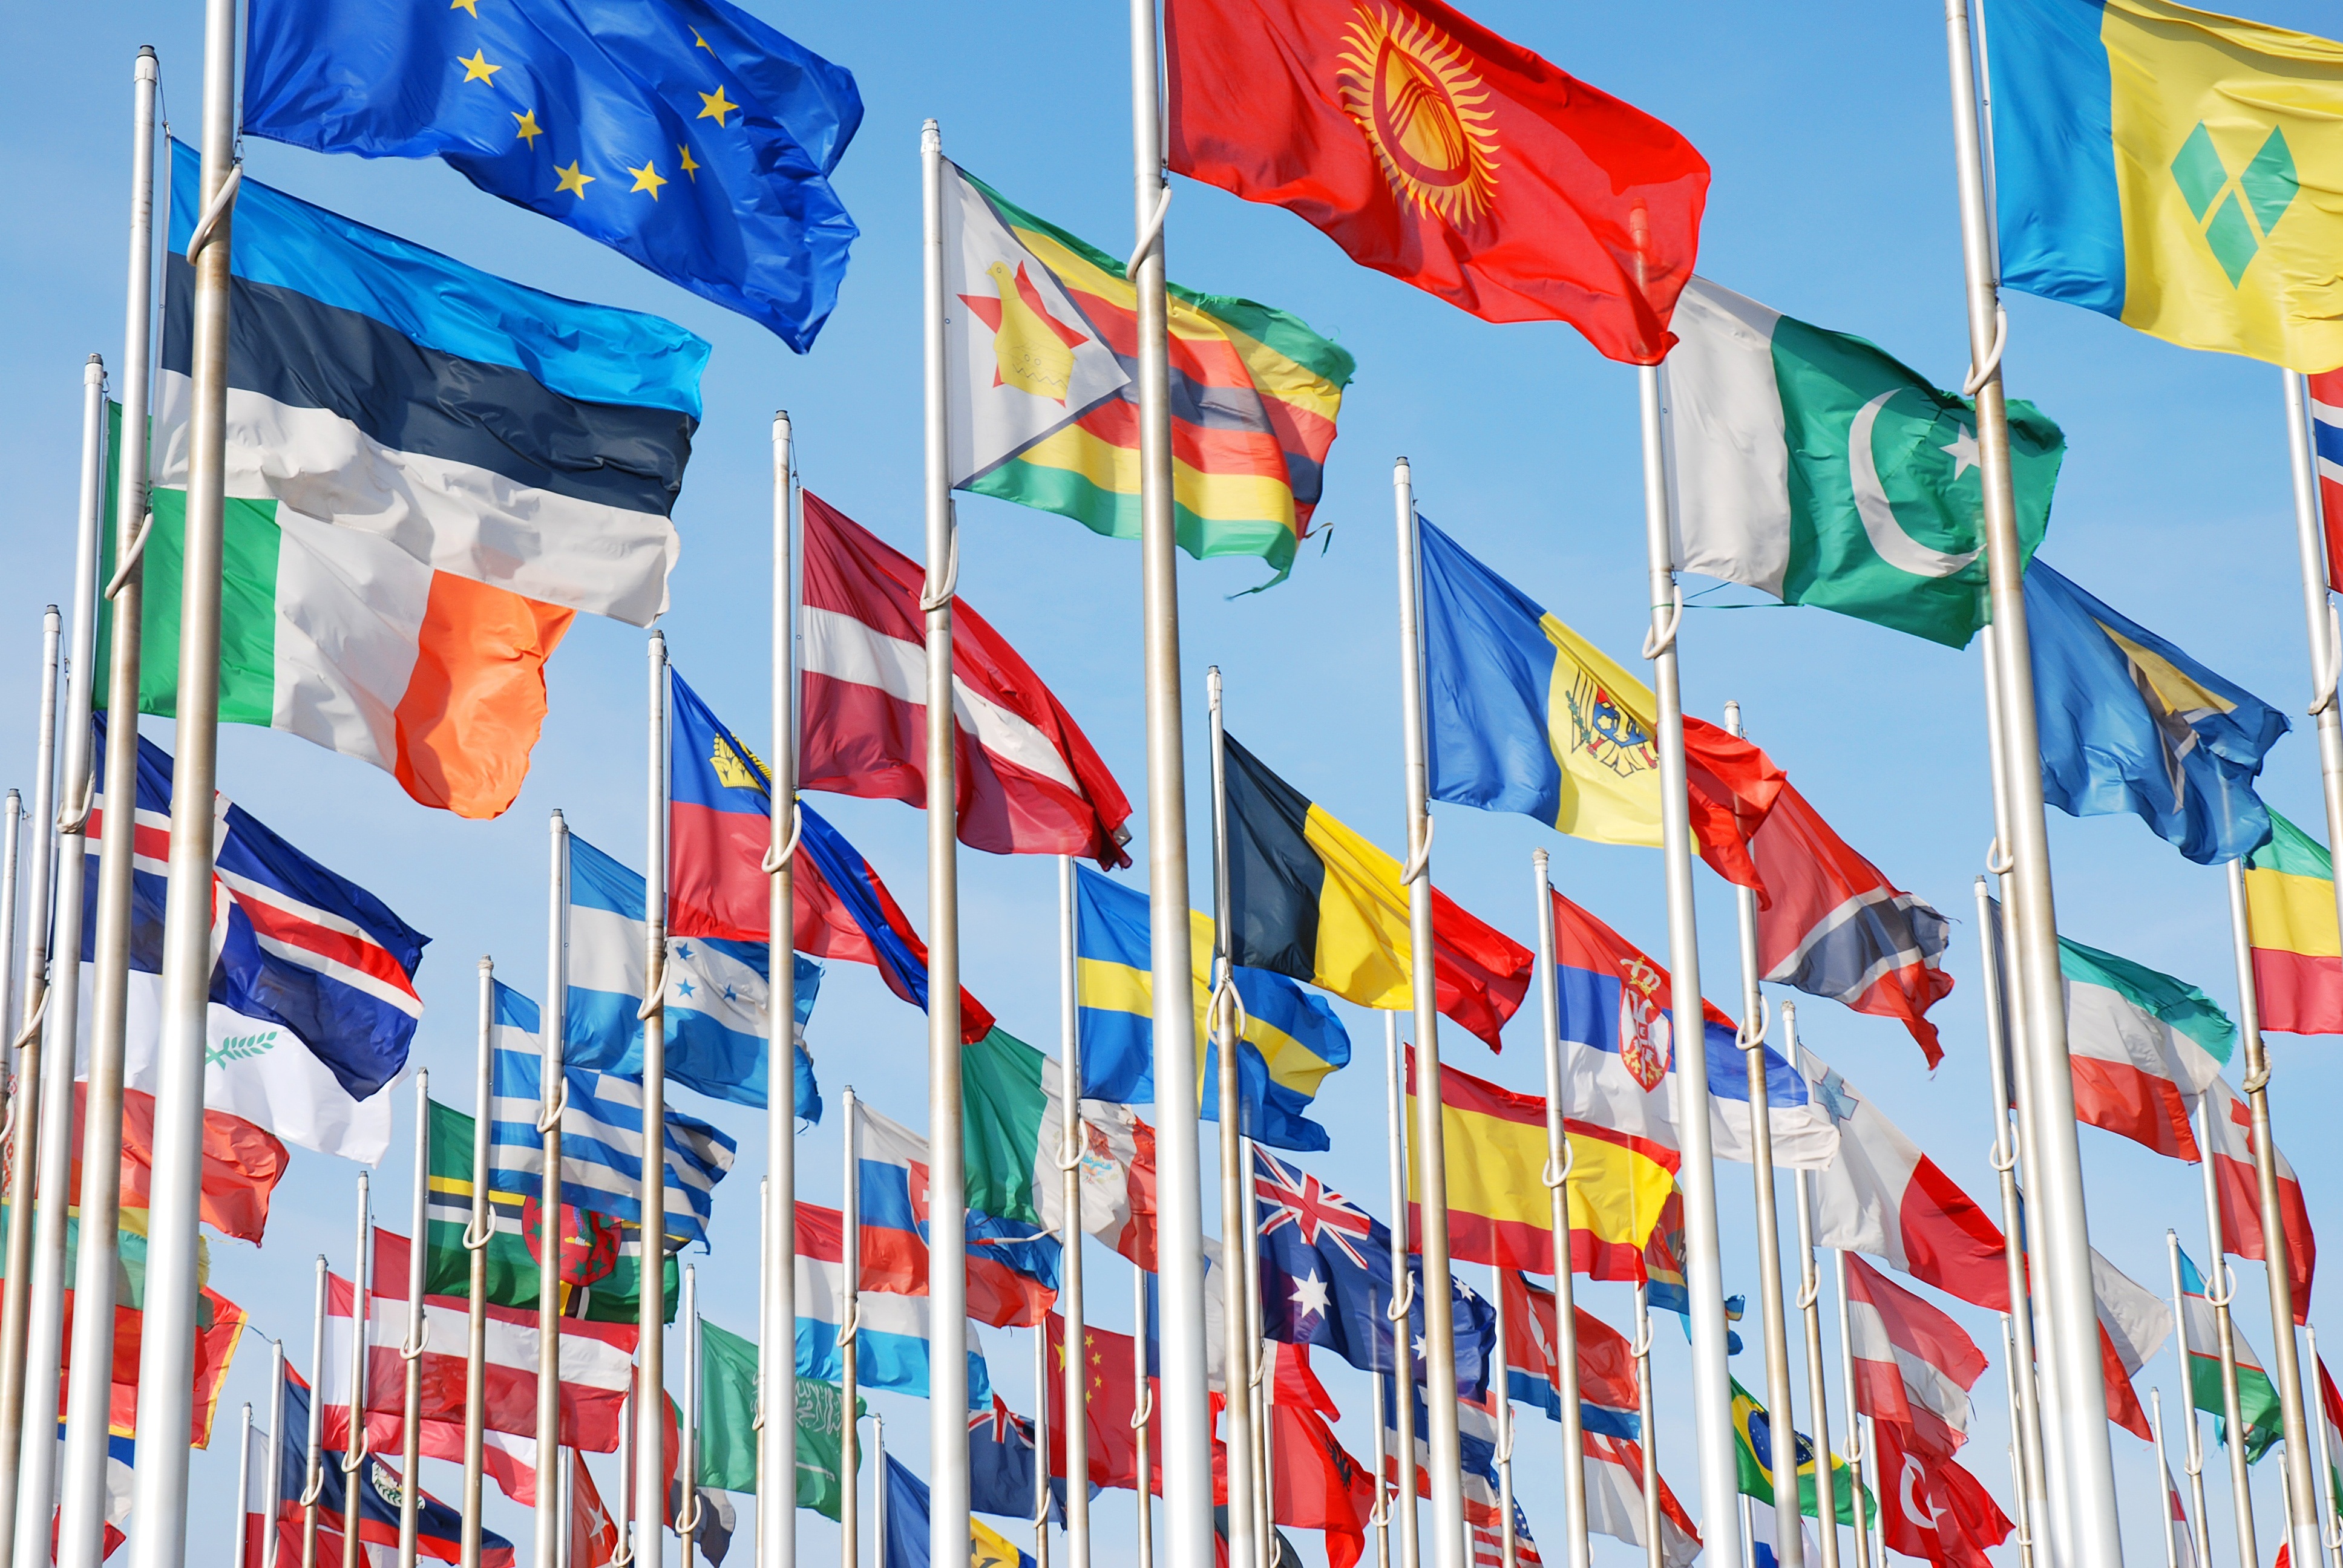 Первое международное сотрудничество. Международный флаг. Организация экономического сотрудничества и развития. Мировое сообщество государств.